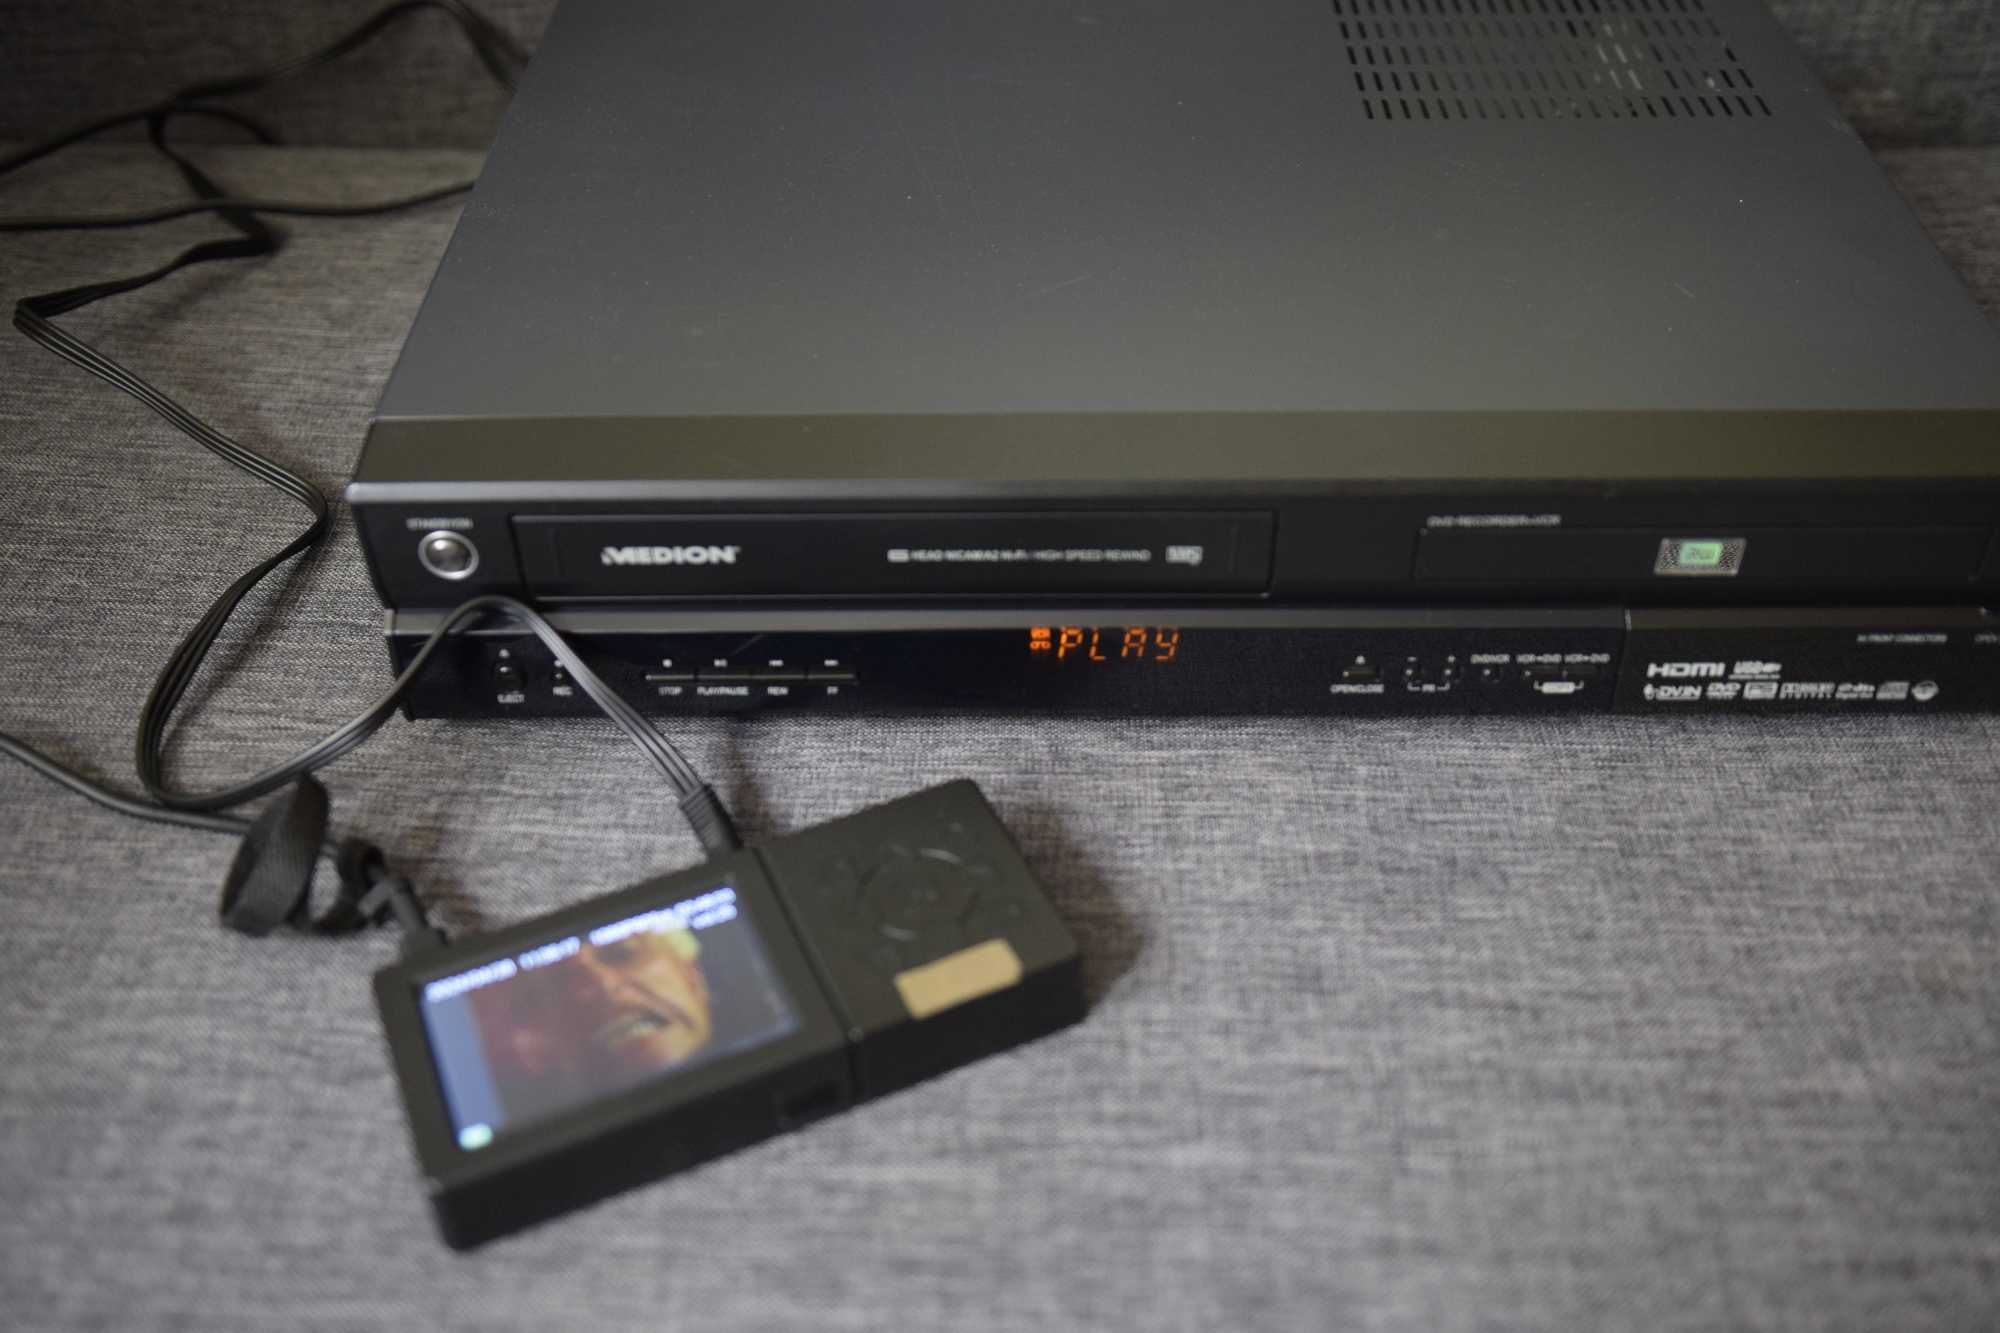 Magnetowid VHS - DVD - RW HDMI DV USB MEDION MD81664